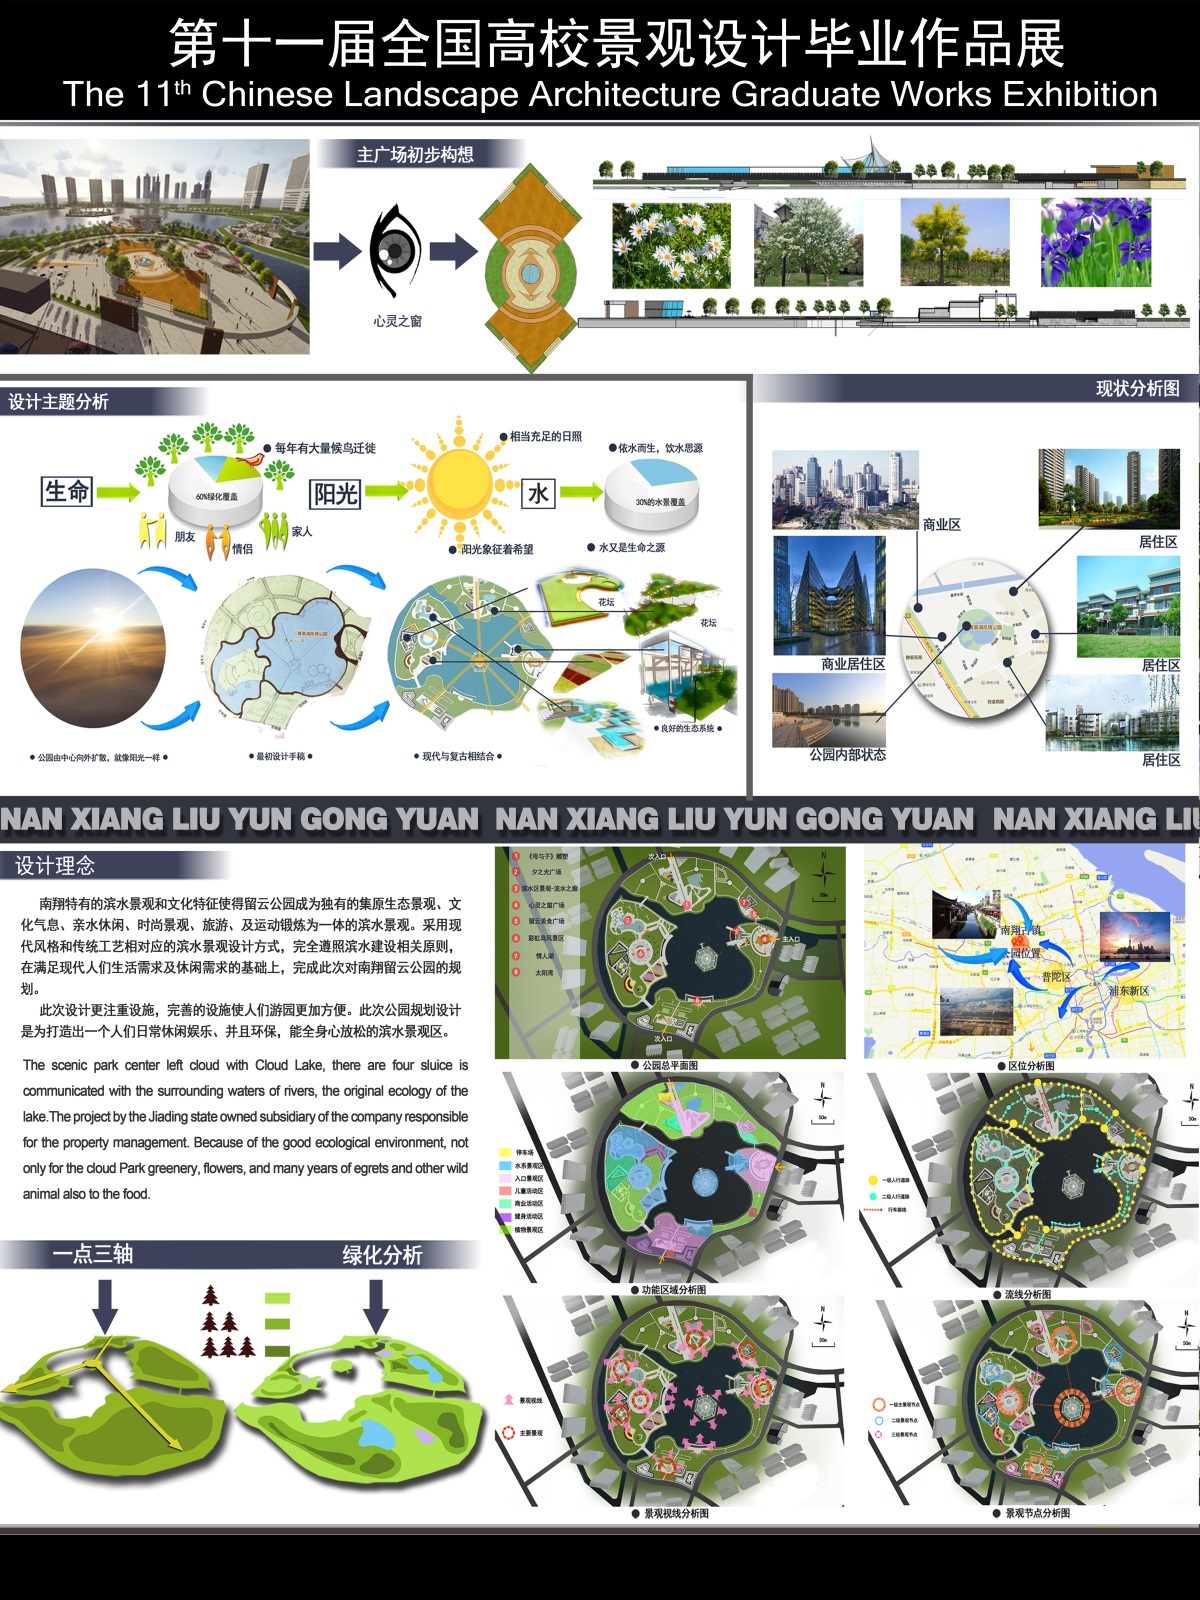 上海留云公园景观设计-1